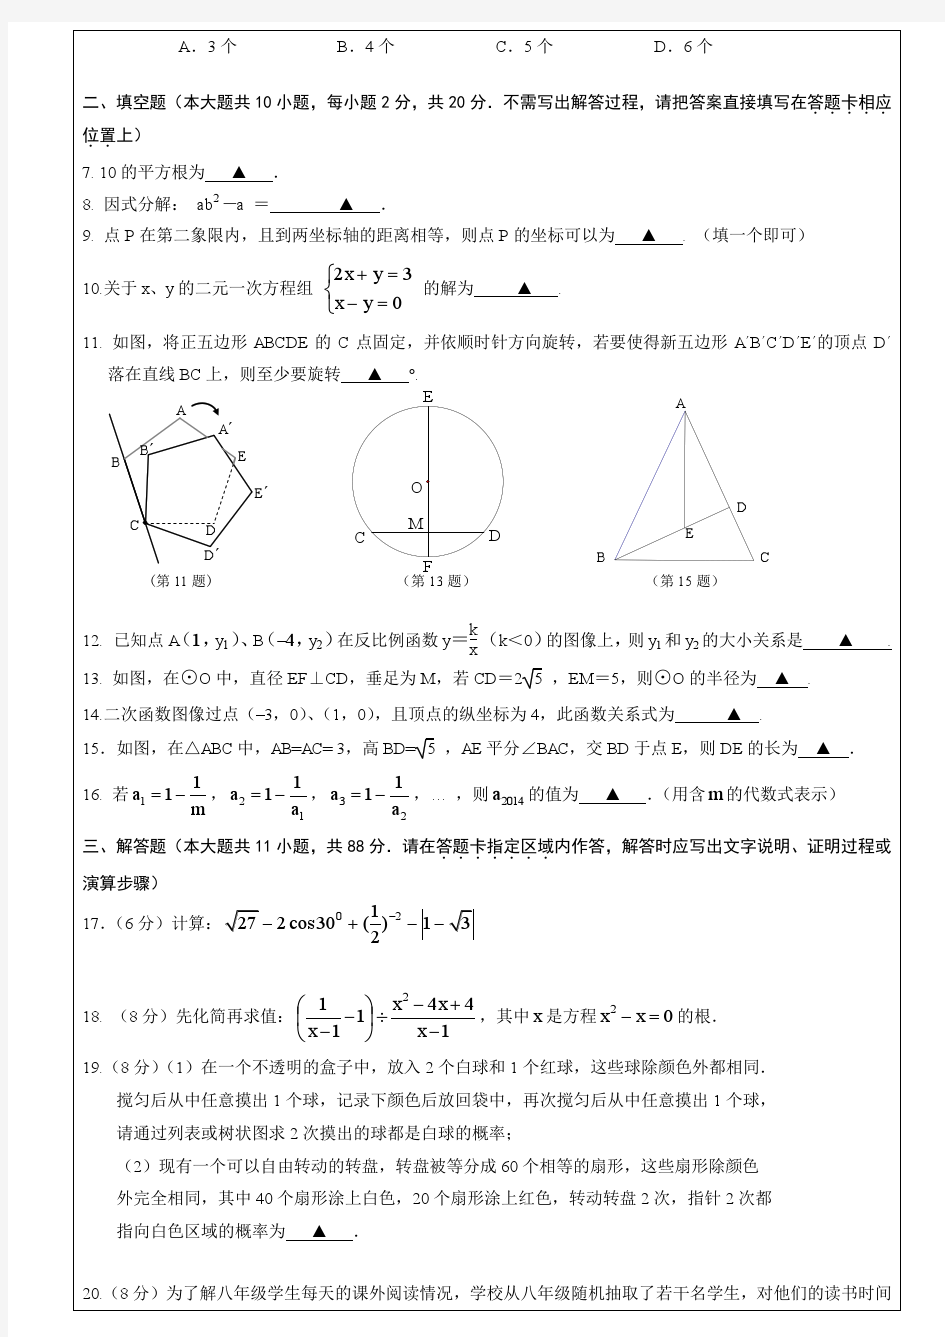 2014年南京市联合体数学二模试卷及答案